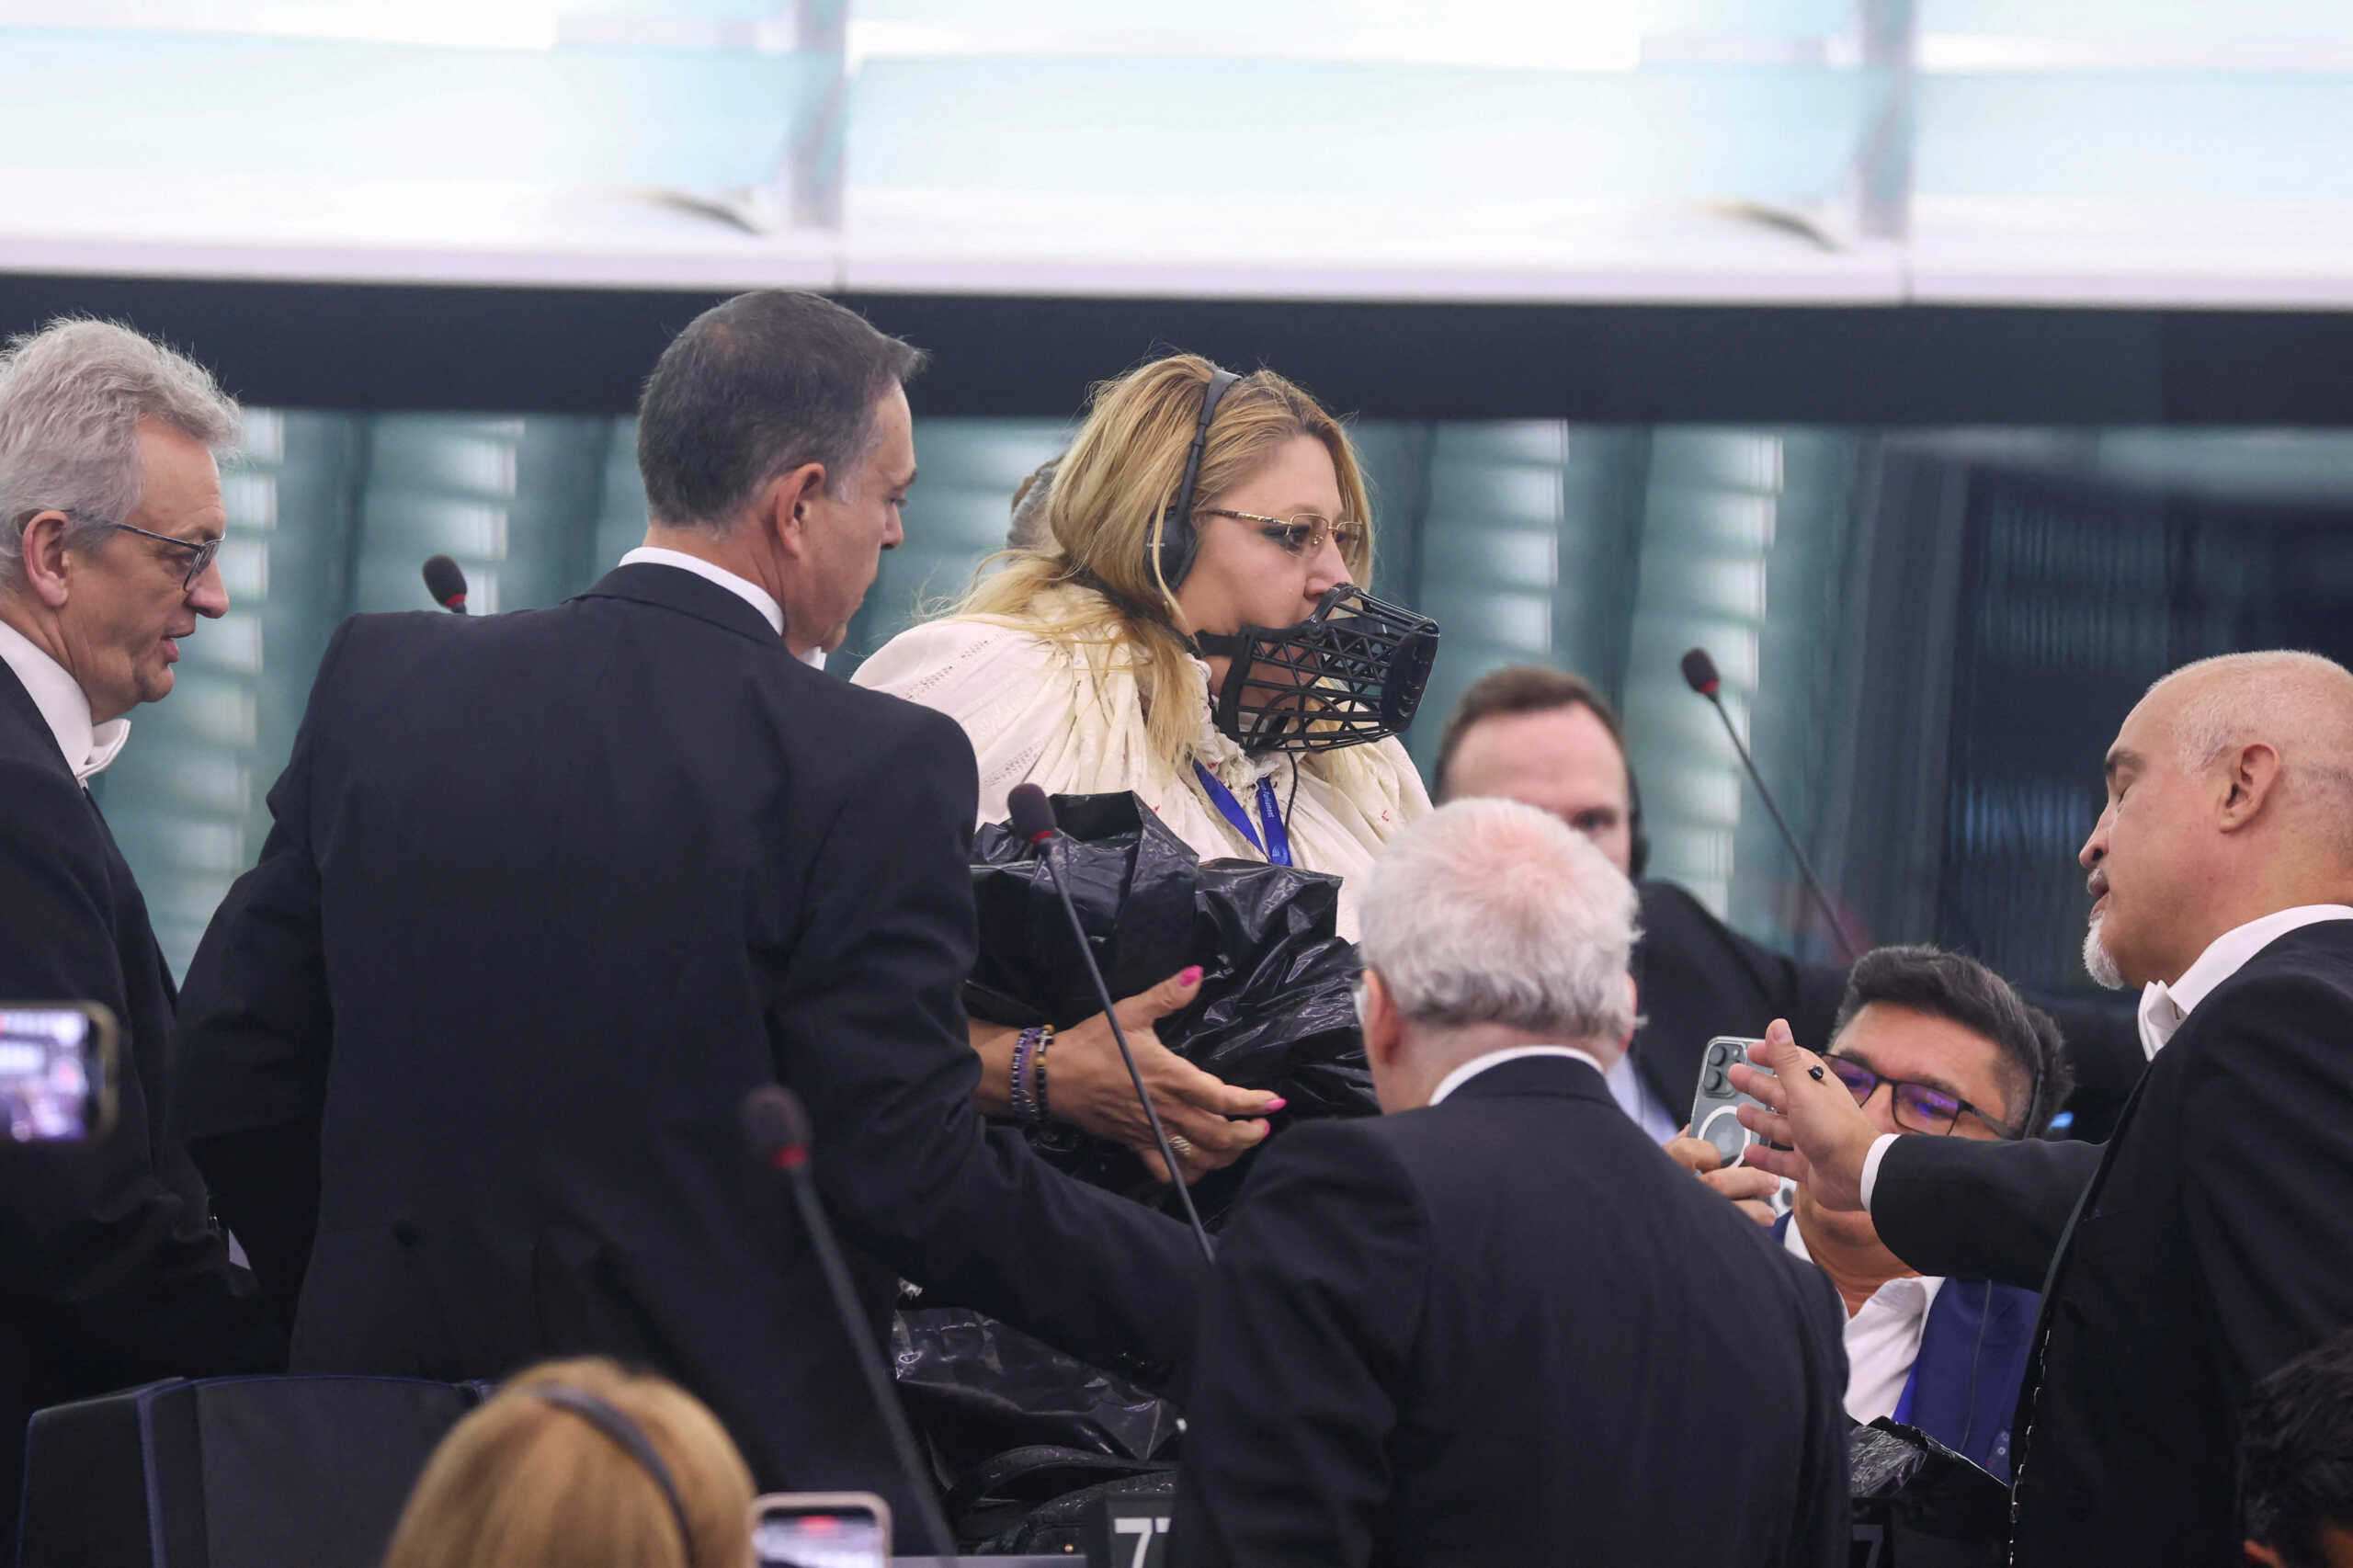 Ρουμάνα ευρωβουλευτής με φίμωτρο έκανε χαμό στο ευρωκοινοβούλιο: Την έβγαλαν σηκωτή γιατί ζητούσε παπά να τους διαβάσει